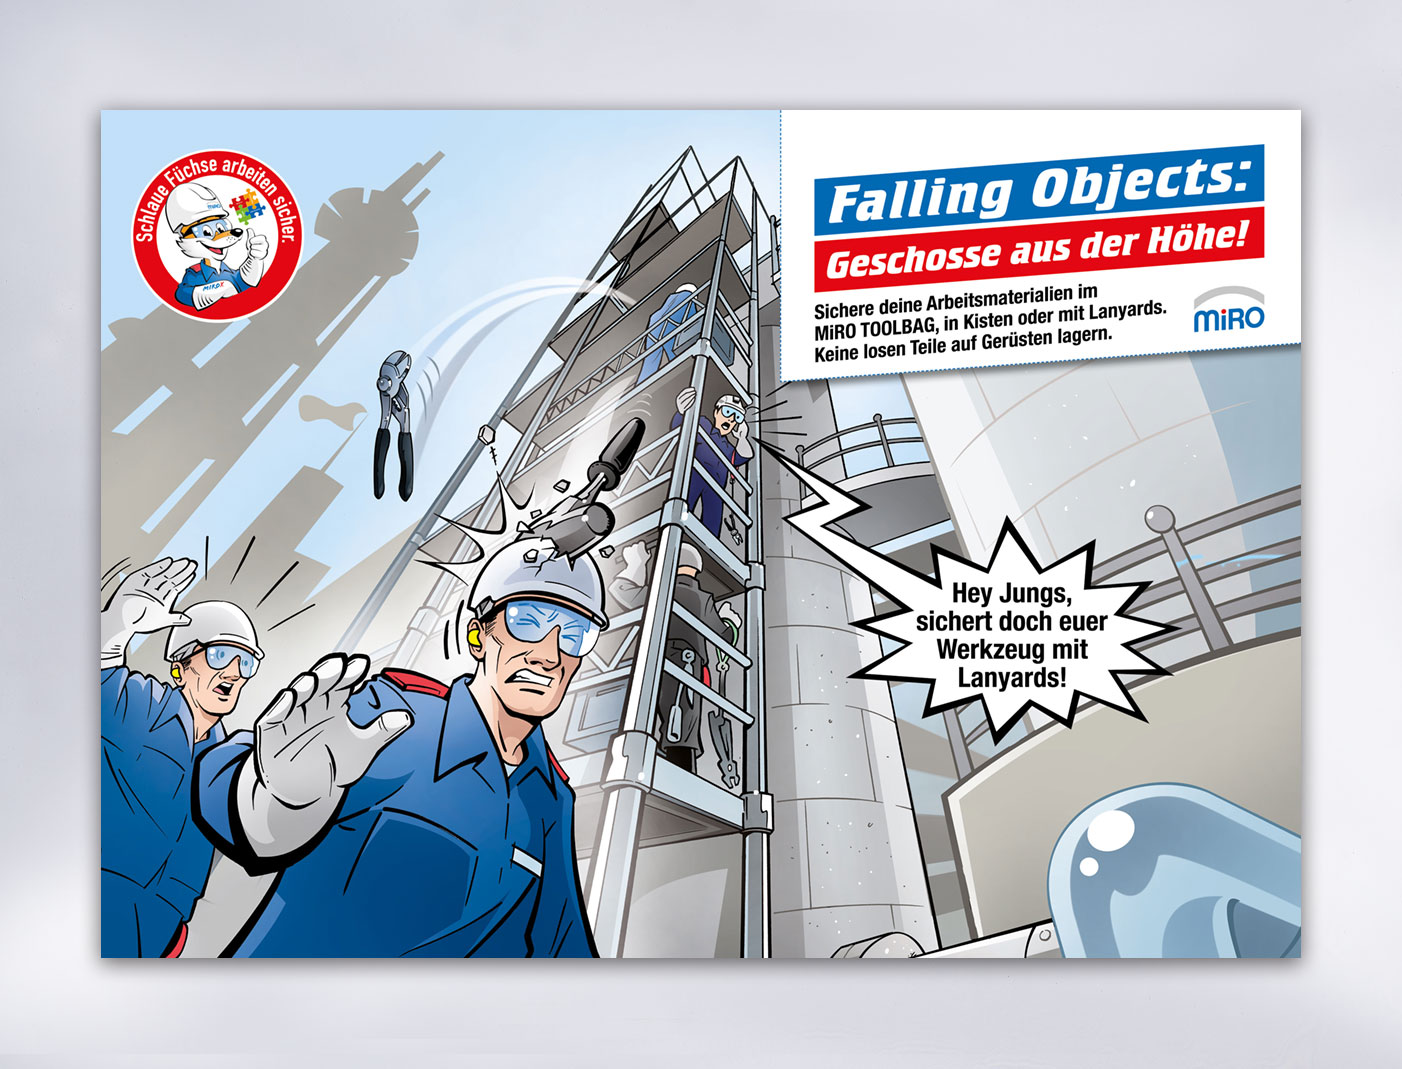 Postermotiv "Falling Objects", Teil einer Sicherheitskampagne